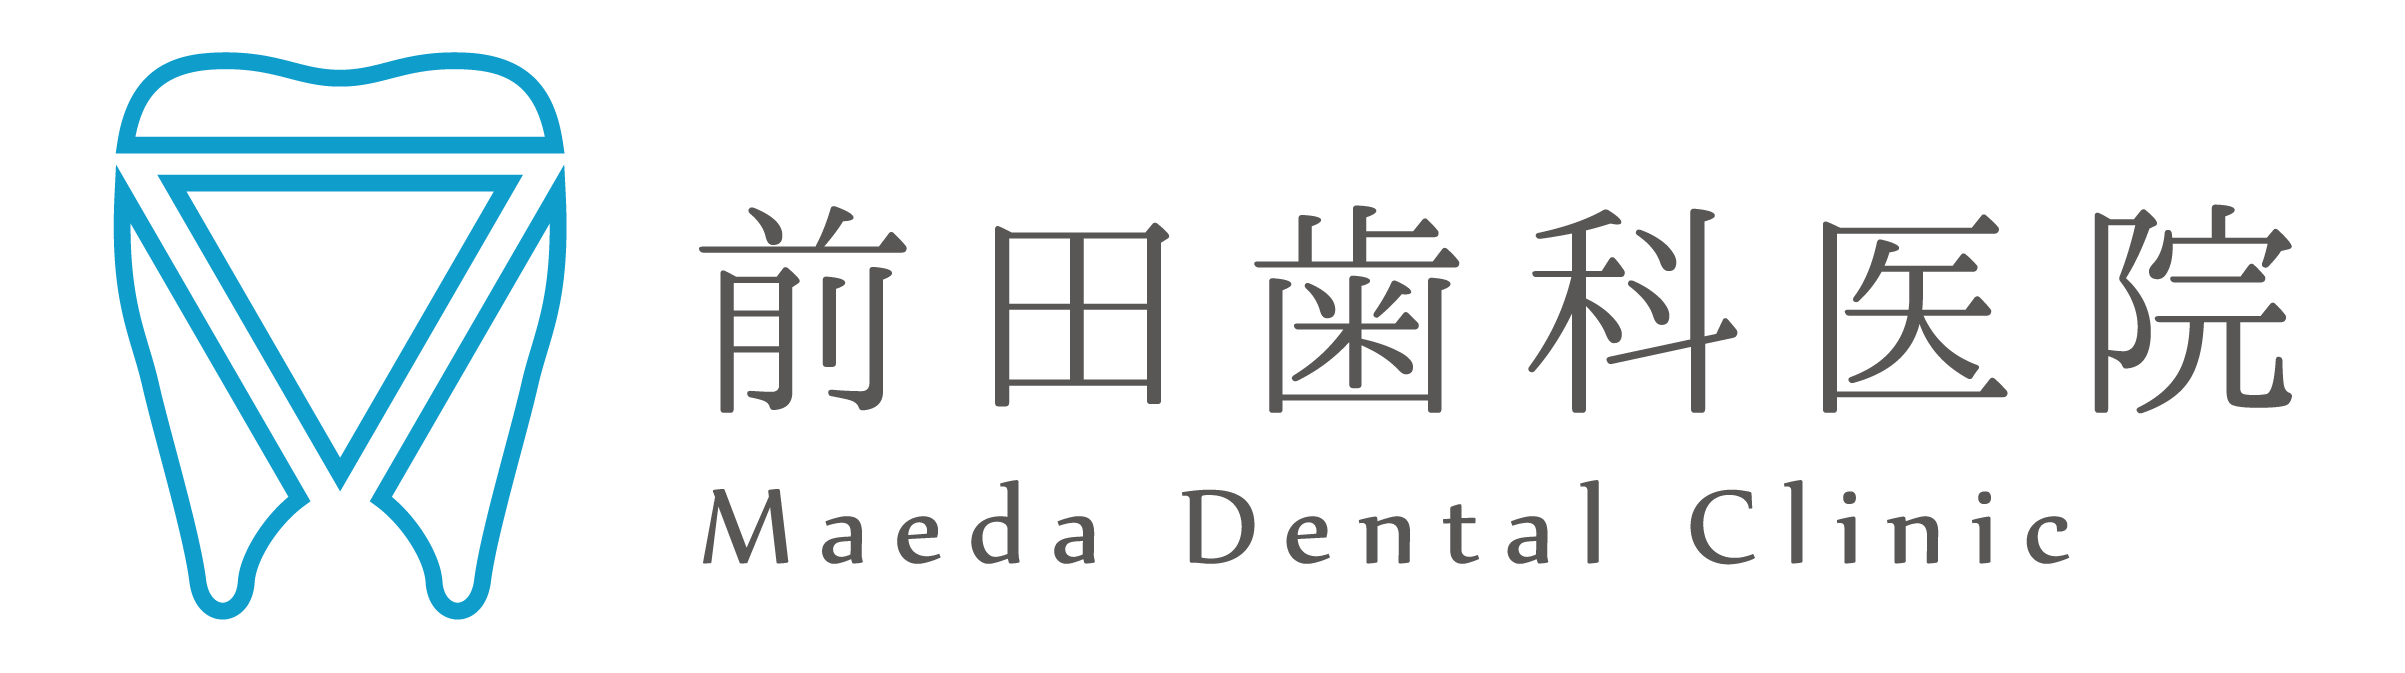 前田歯科医院logo